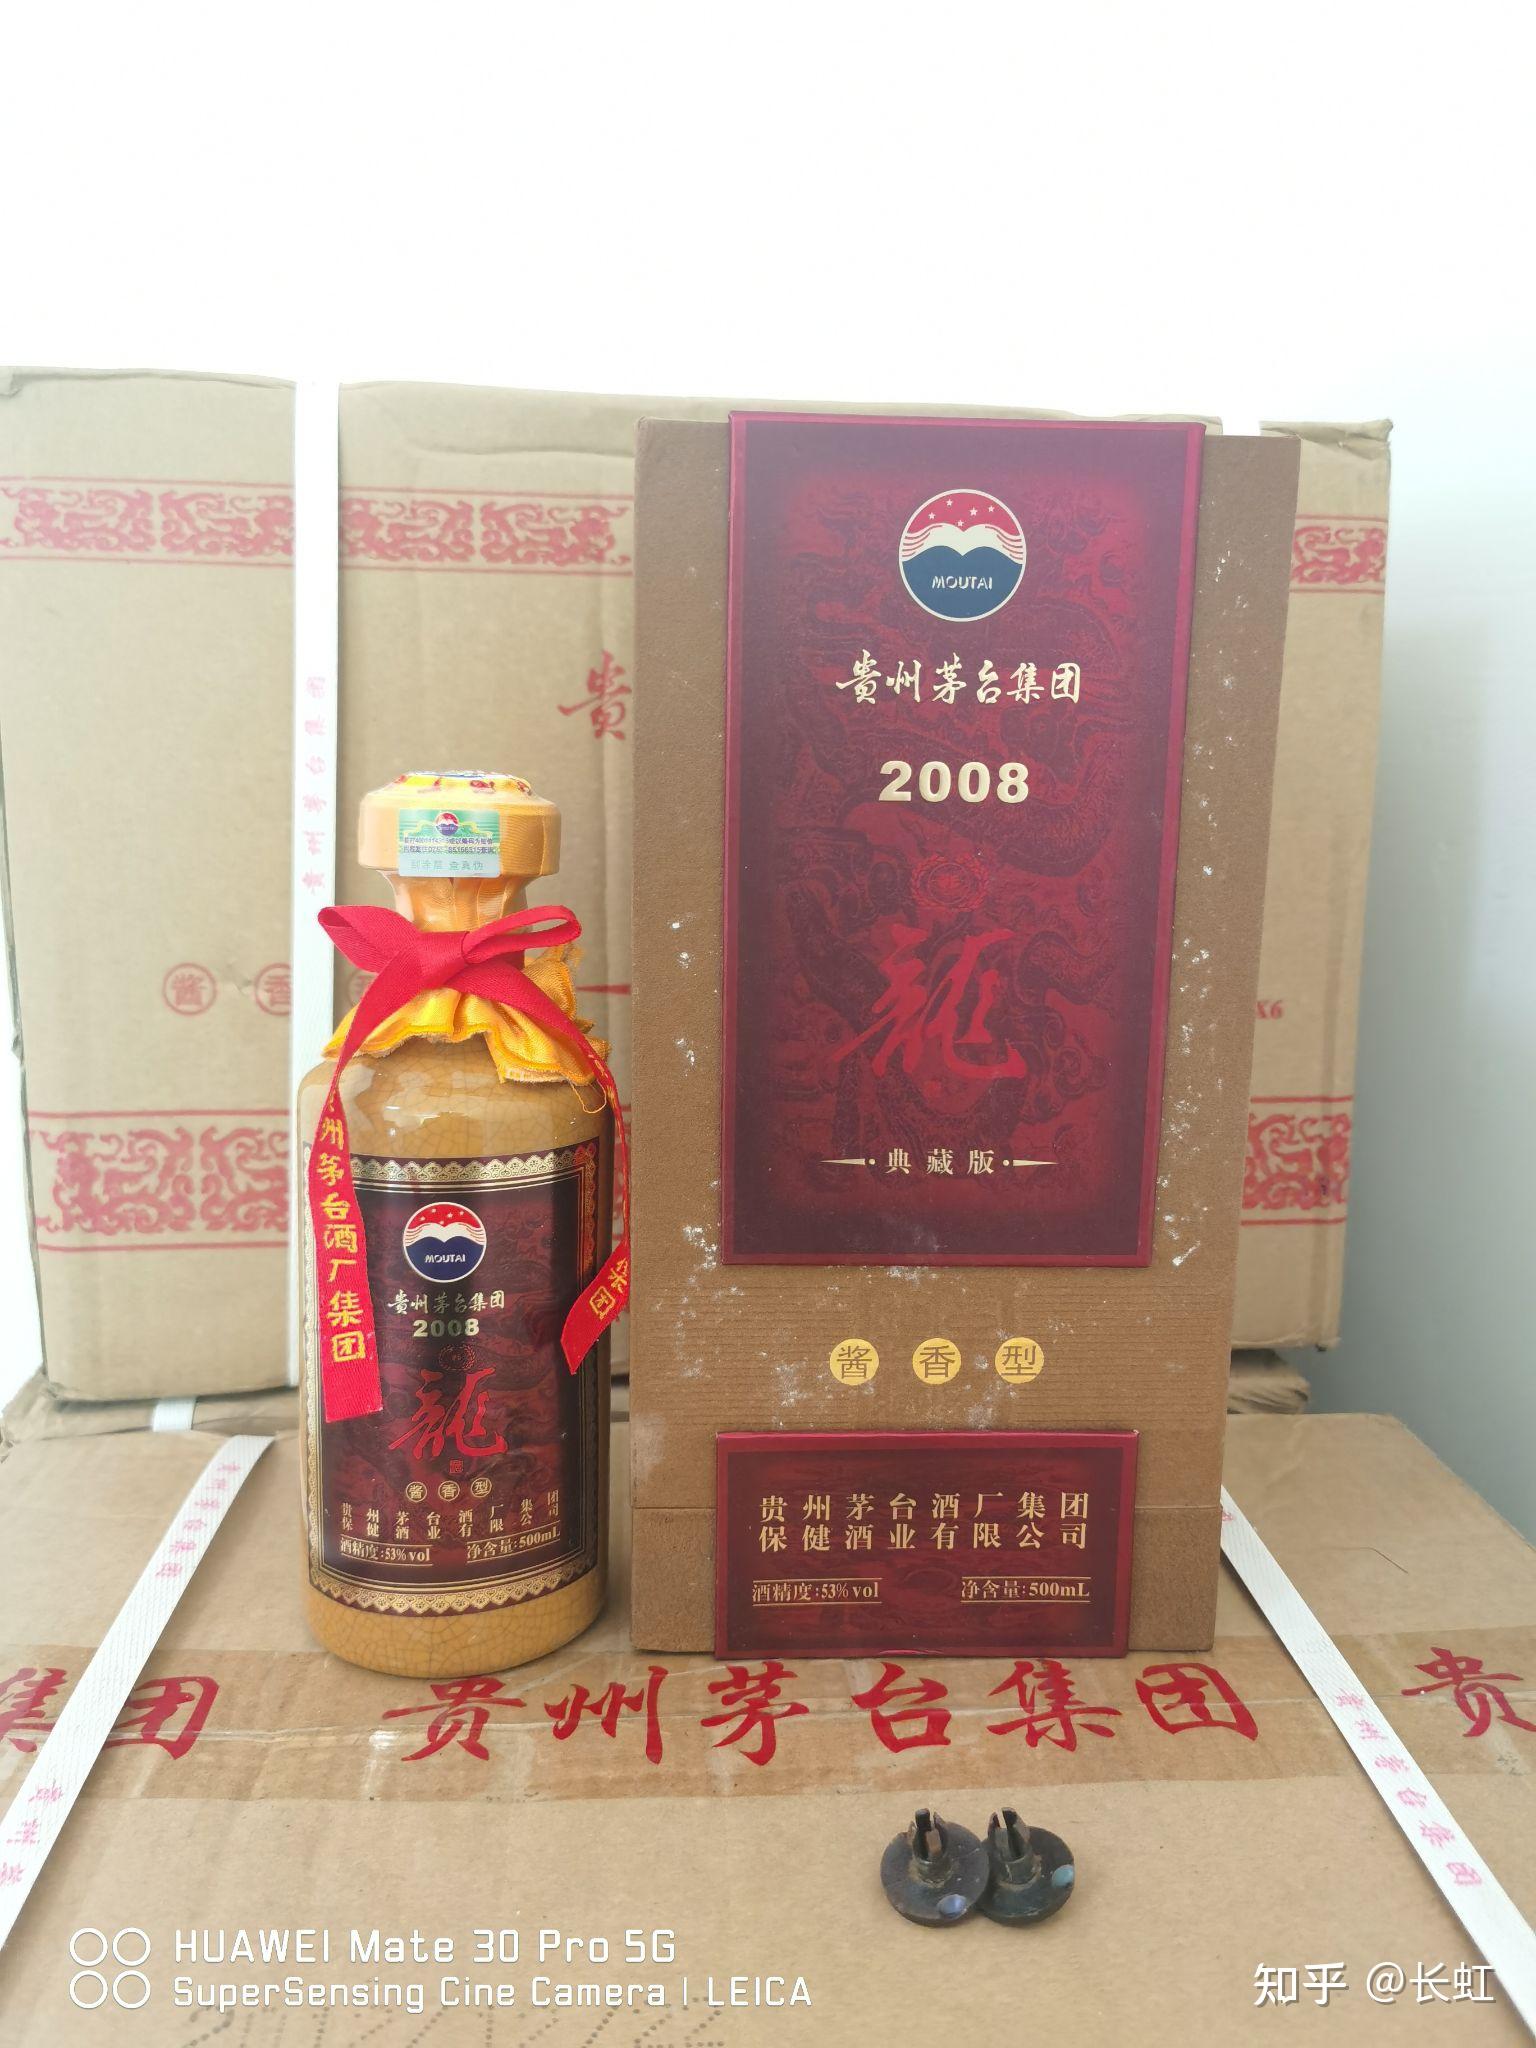 少康酒-中国名优酒-图片